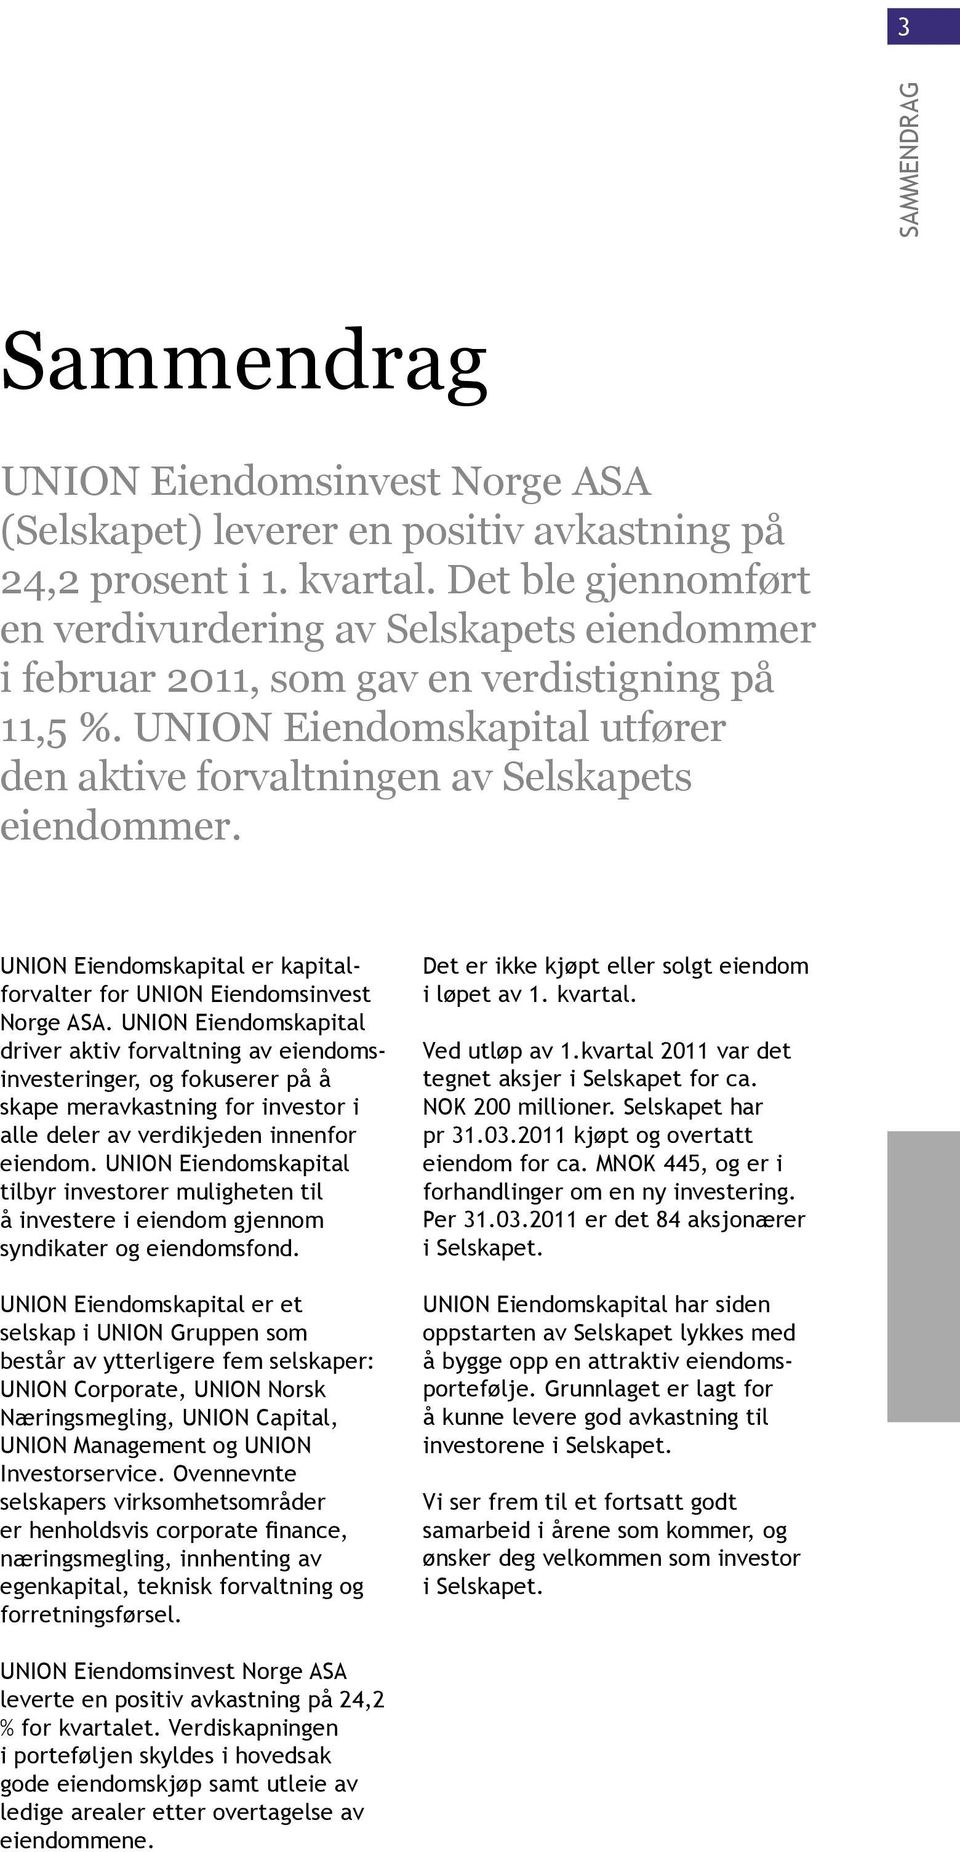 UNION Eiendomskapital er kapitalforvalter for UNION Eiendomsinvest Norge ASA.